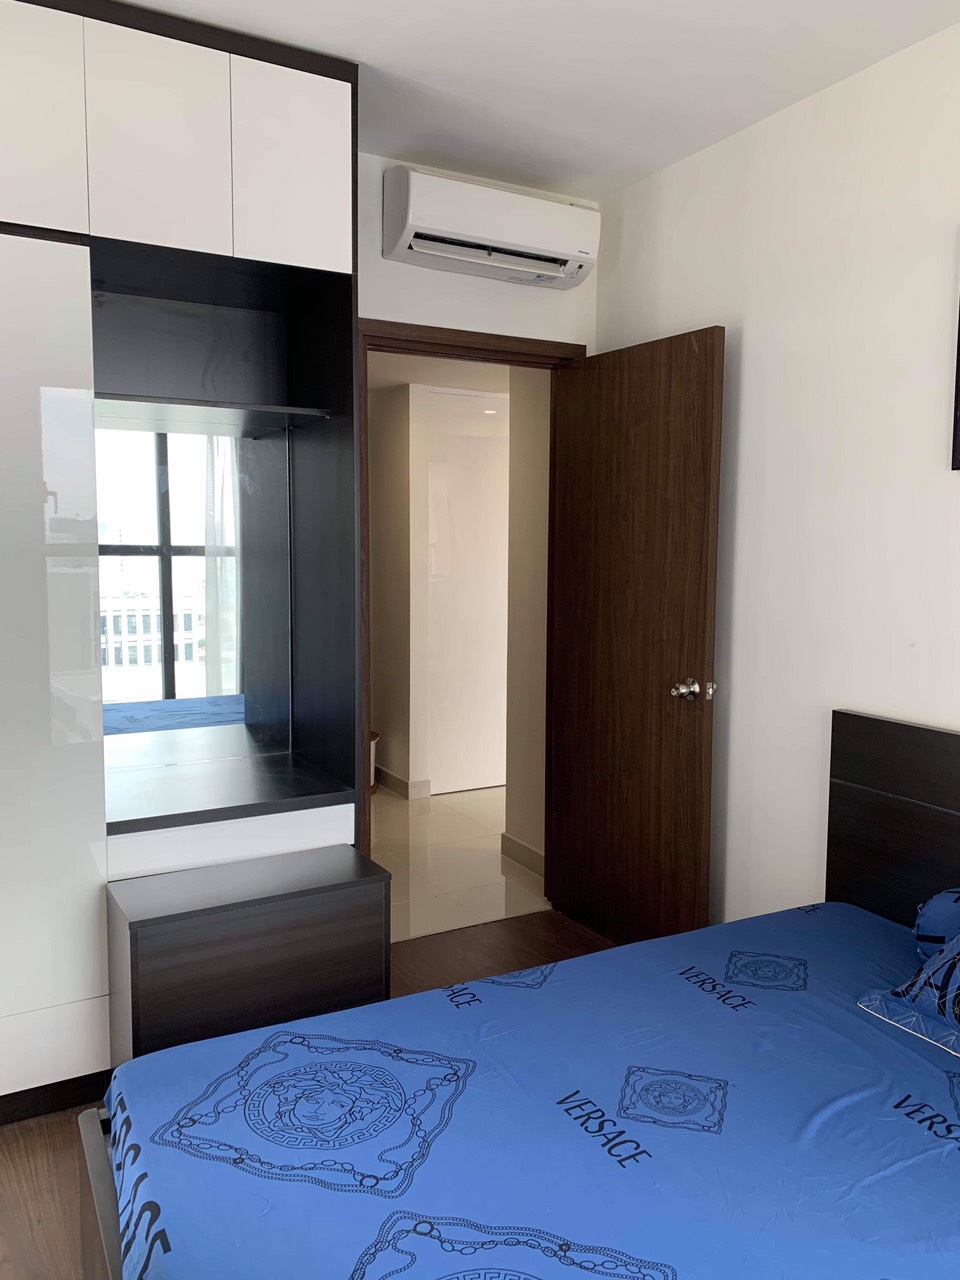 Cho thuê căn hộ Saigon Royal 2 phòng ngủ, giá 25 triệu/tháng, LH 0909037377 